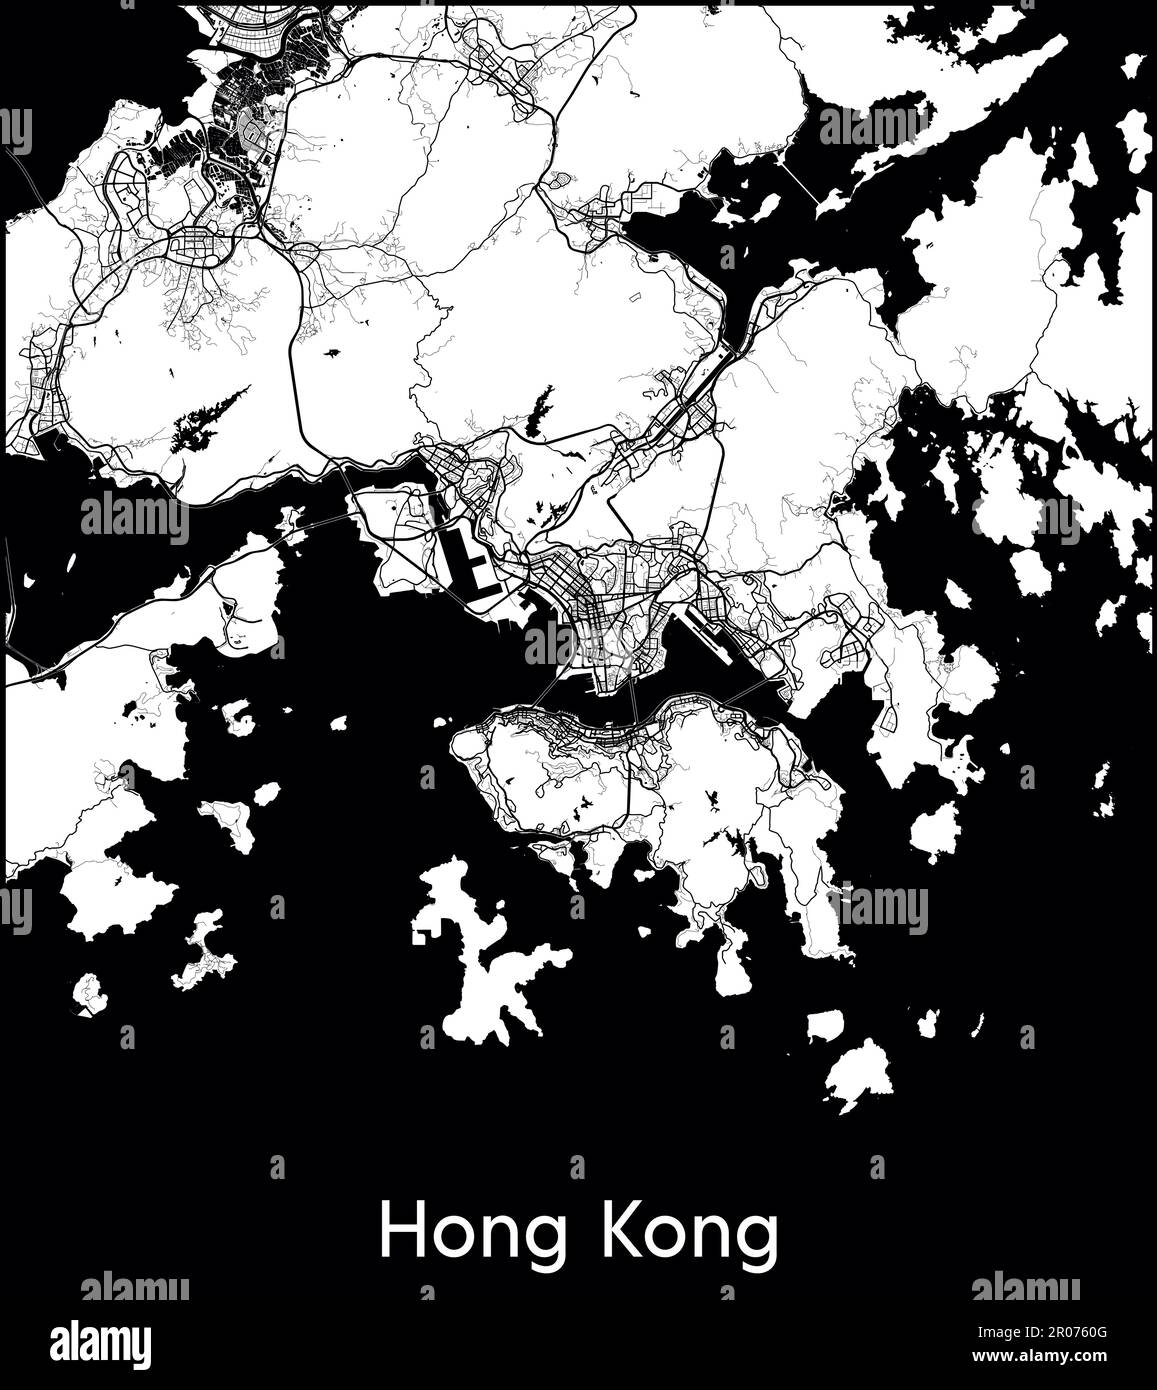 City Map Asia China Hong Kong vector illustration Stock Vector